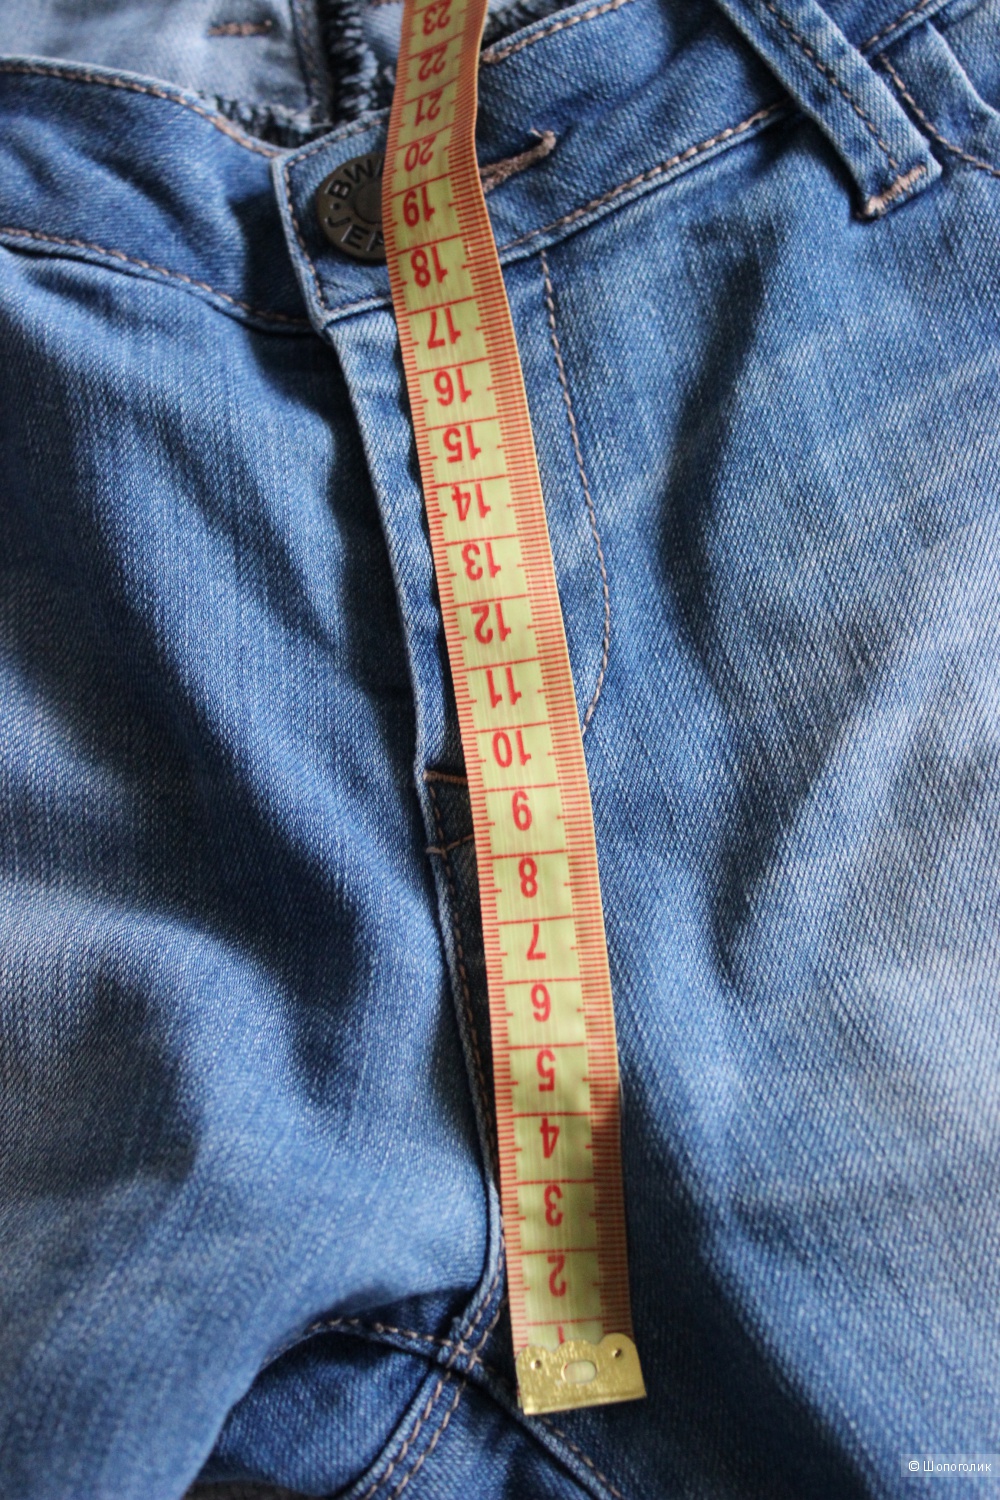 Джинсы BWNY Jeans, Германия, размер 46-48, цвет синий.